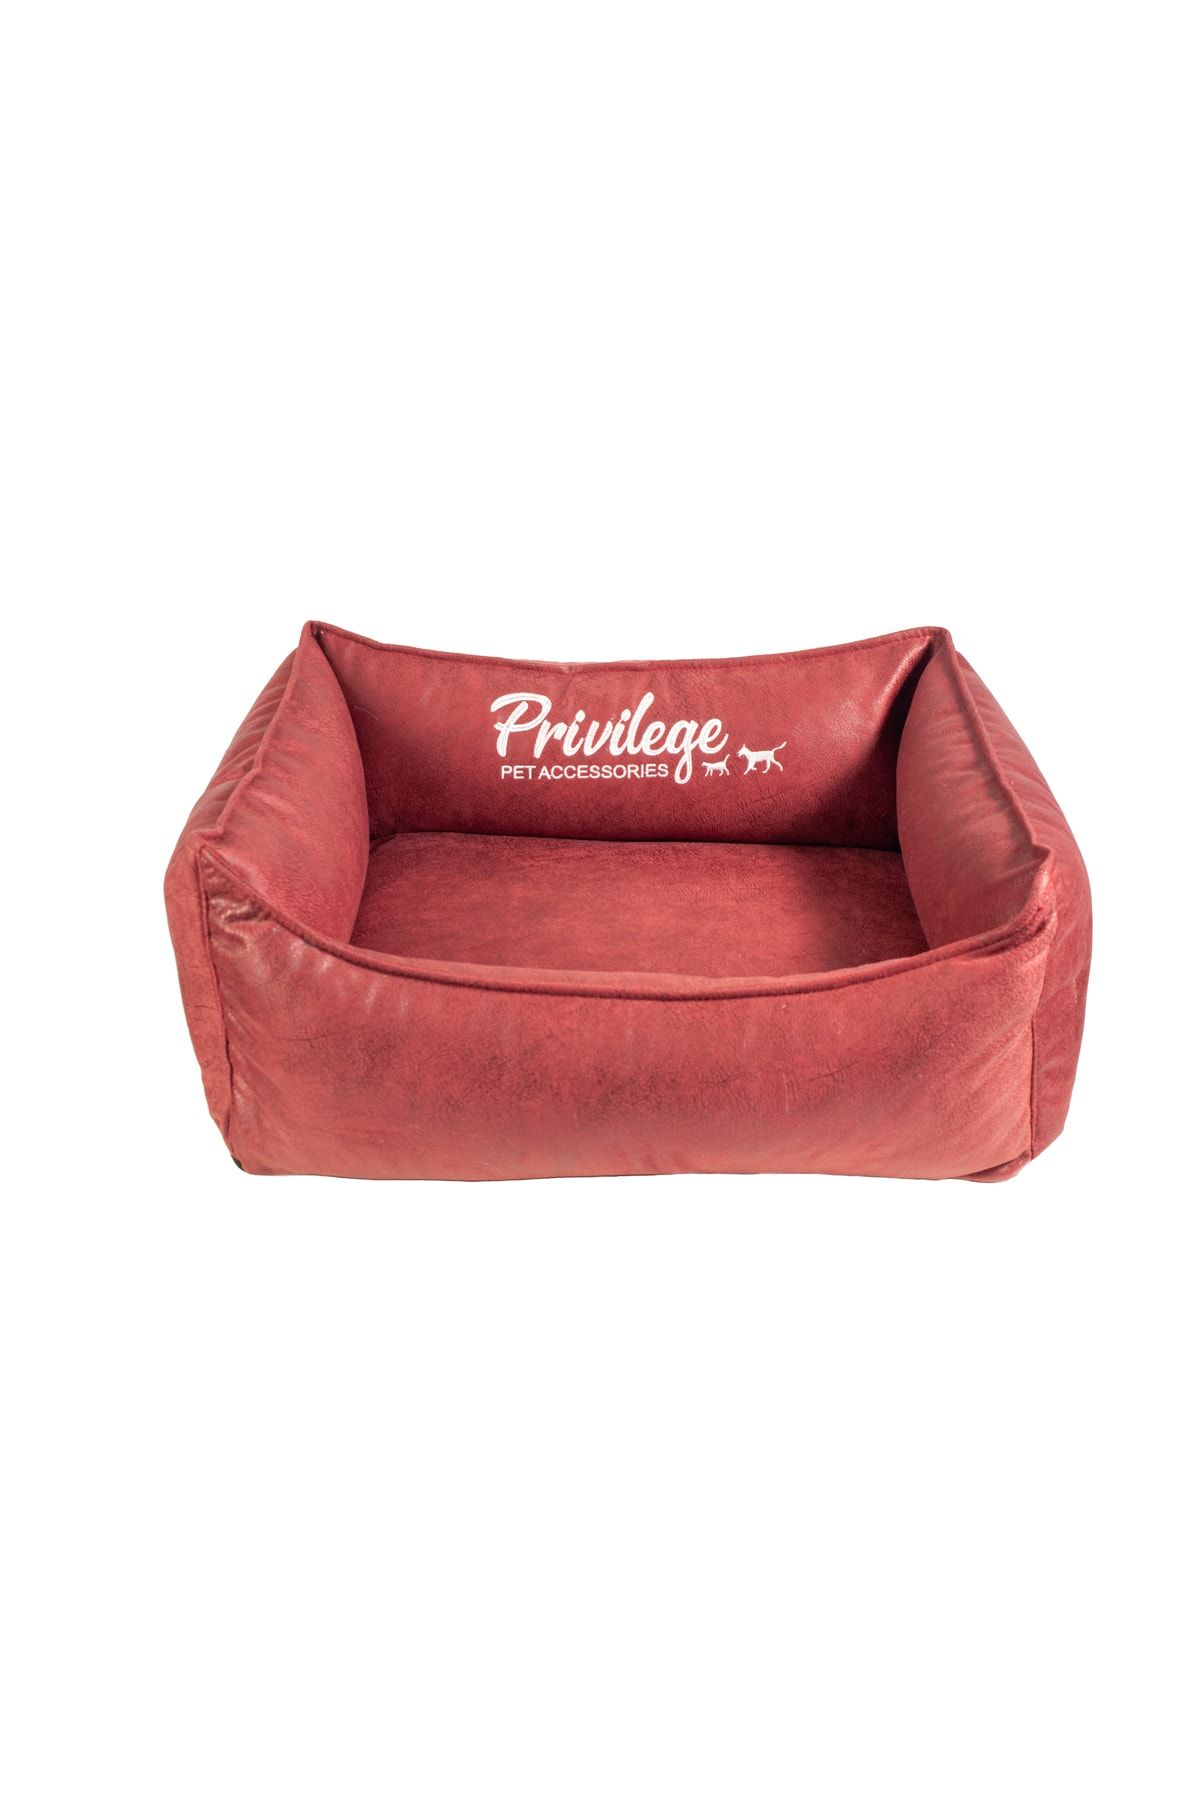 Privilege Premium Visco Köpek Yatağı Kırmızı Large 70x90x22 Cm